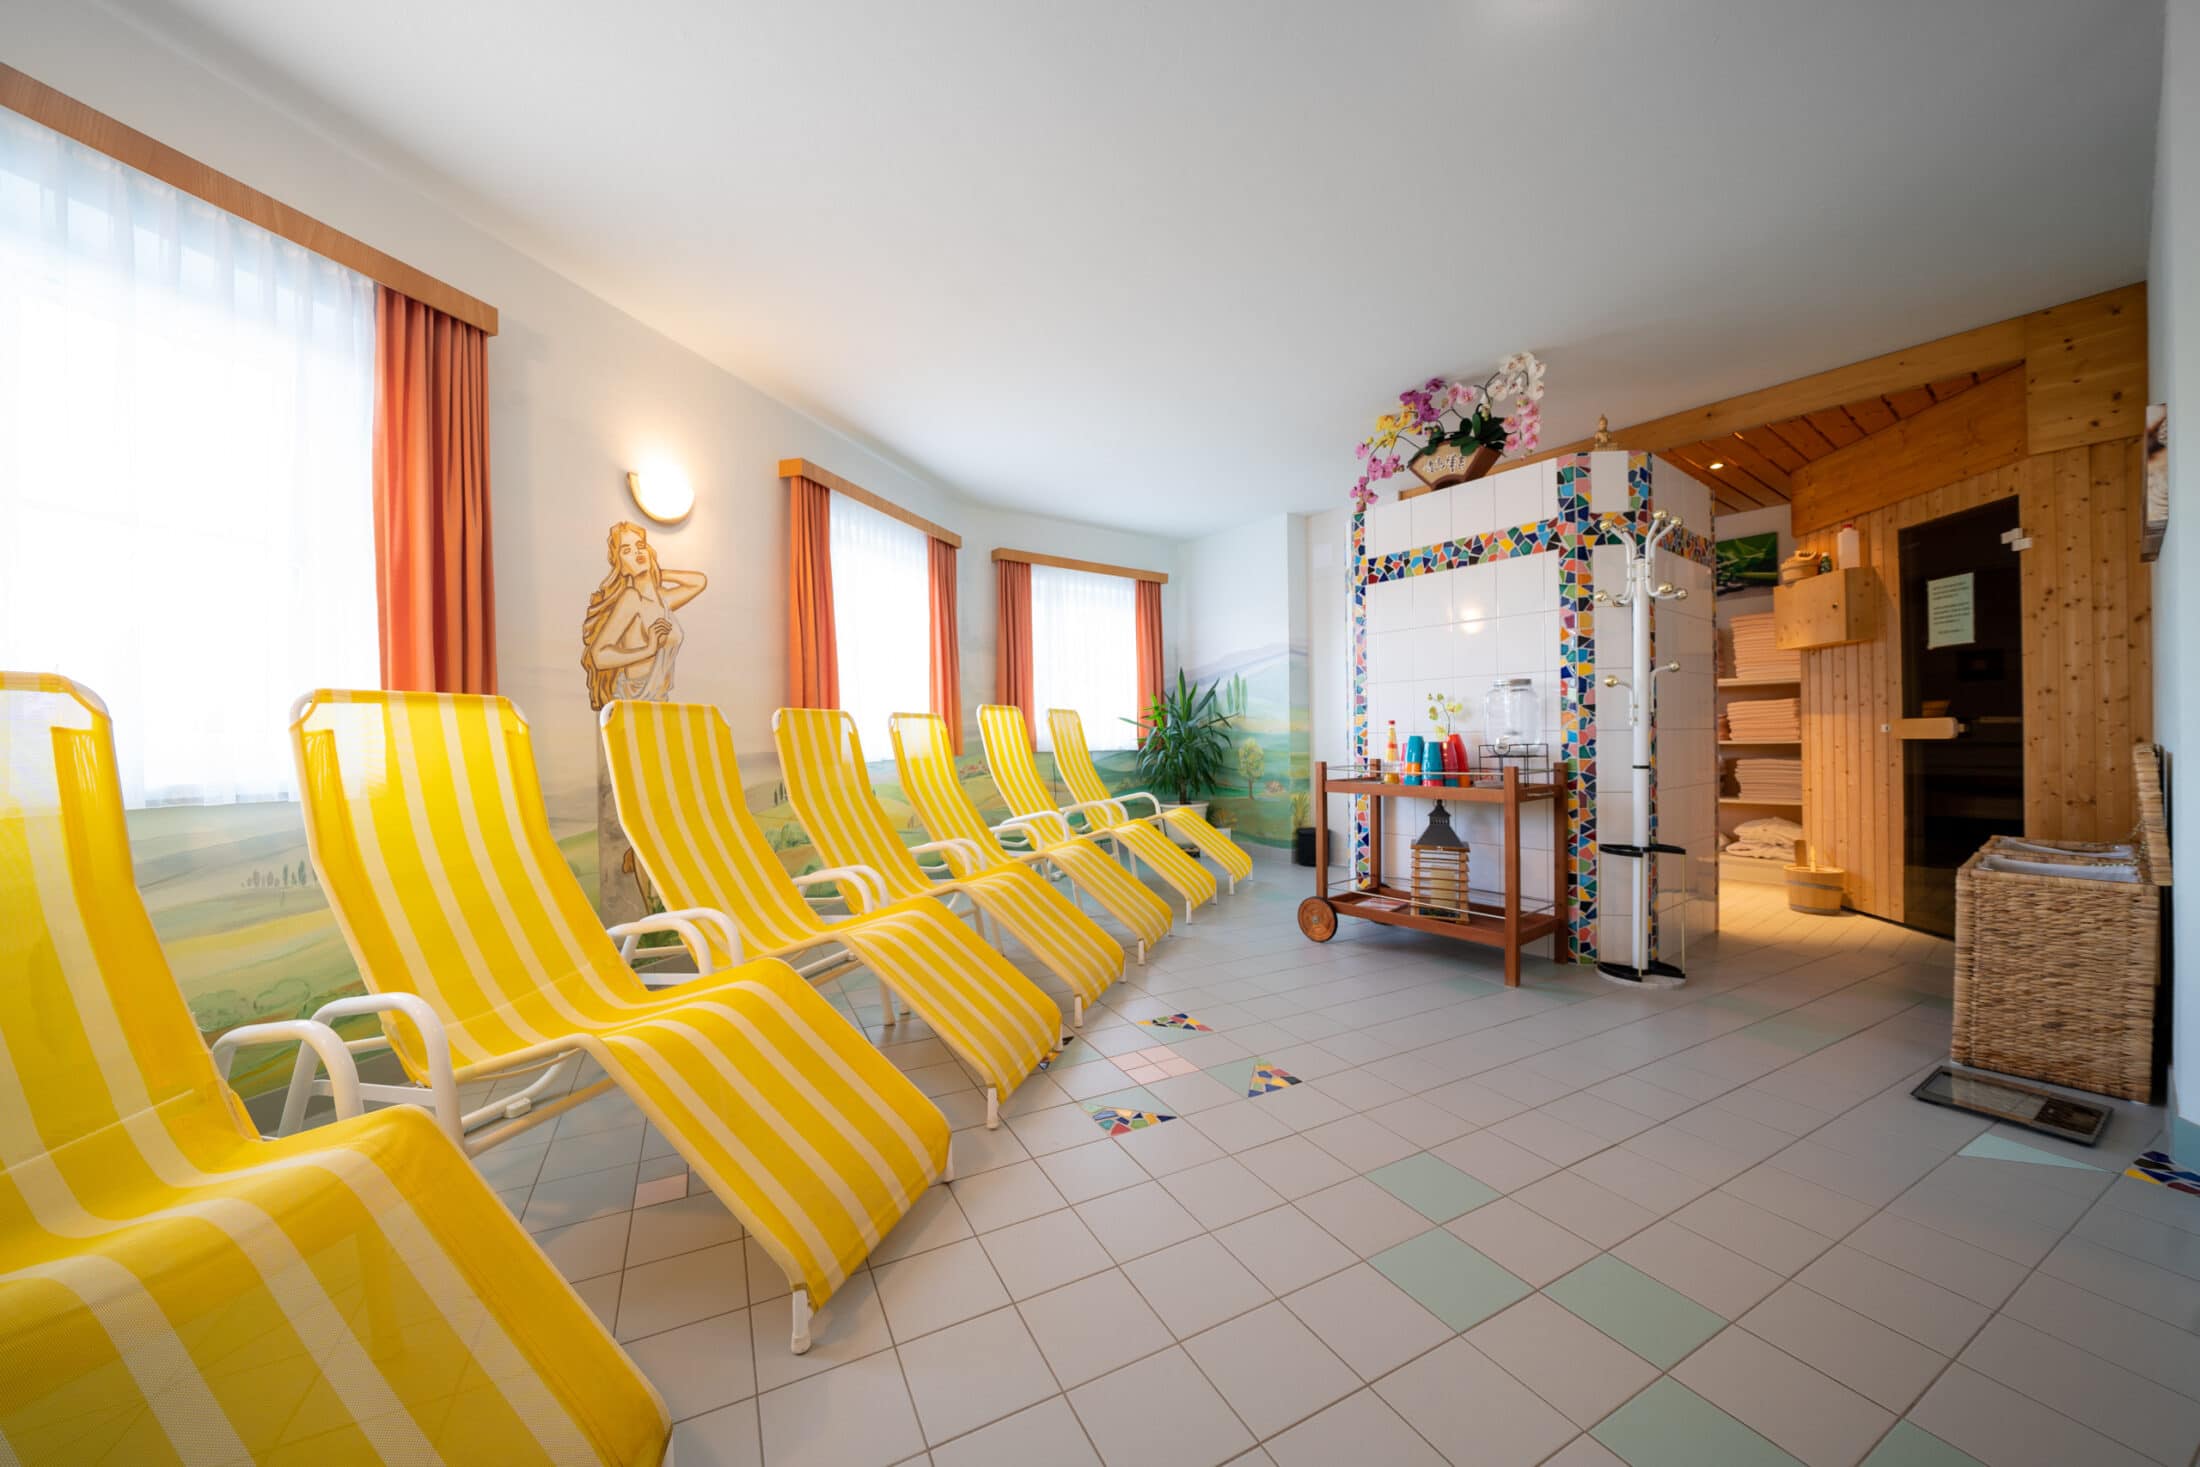 Wellnessbereich mit Sauna und Ruhebereich - Hotel Tischlbergerhof Ramsau am Dachstein